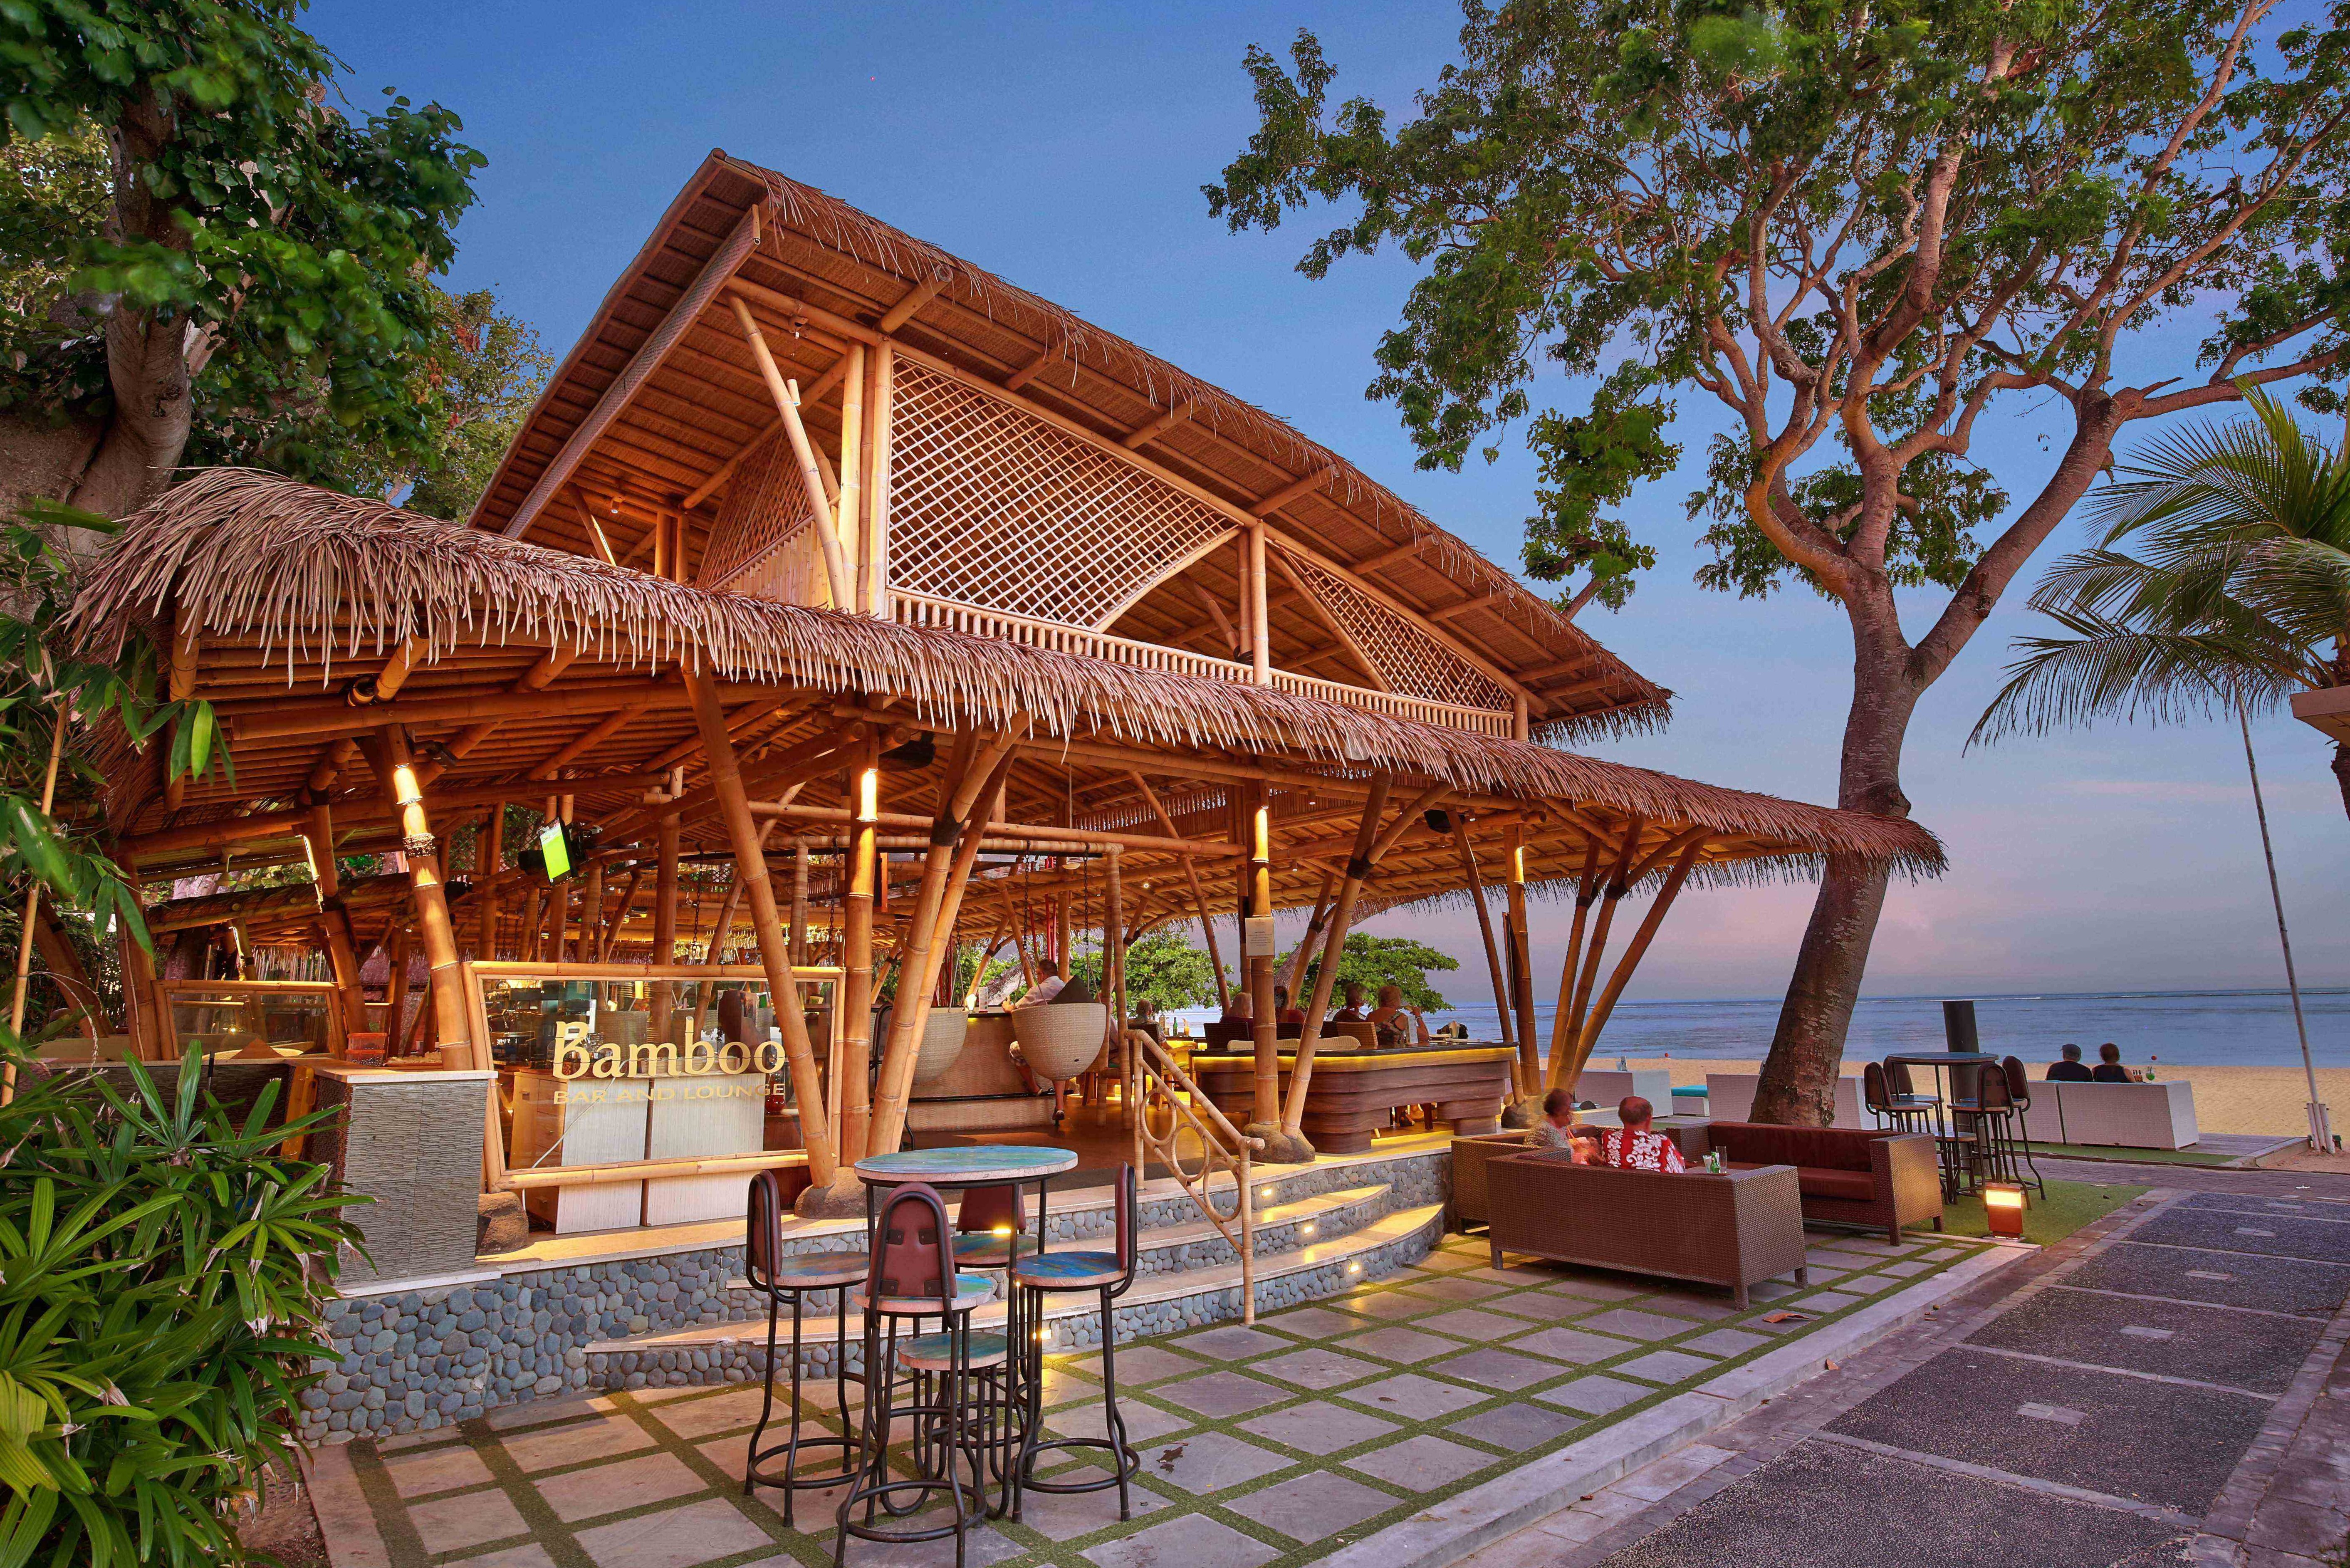 Prama Sanur Beach Hotel | Sanur, Bali - 333travel